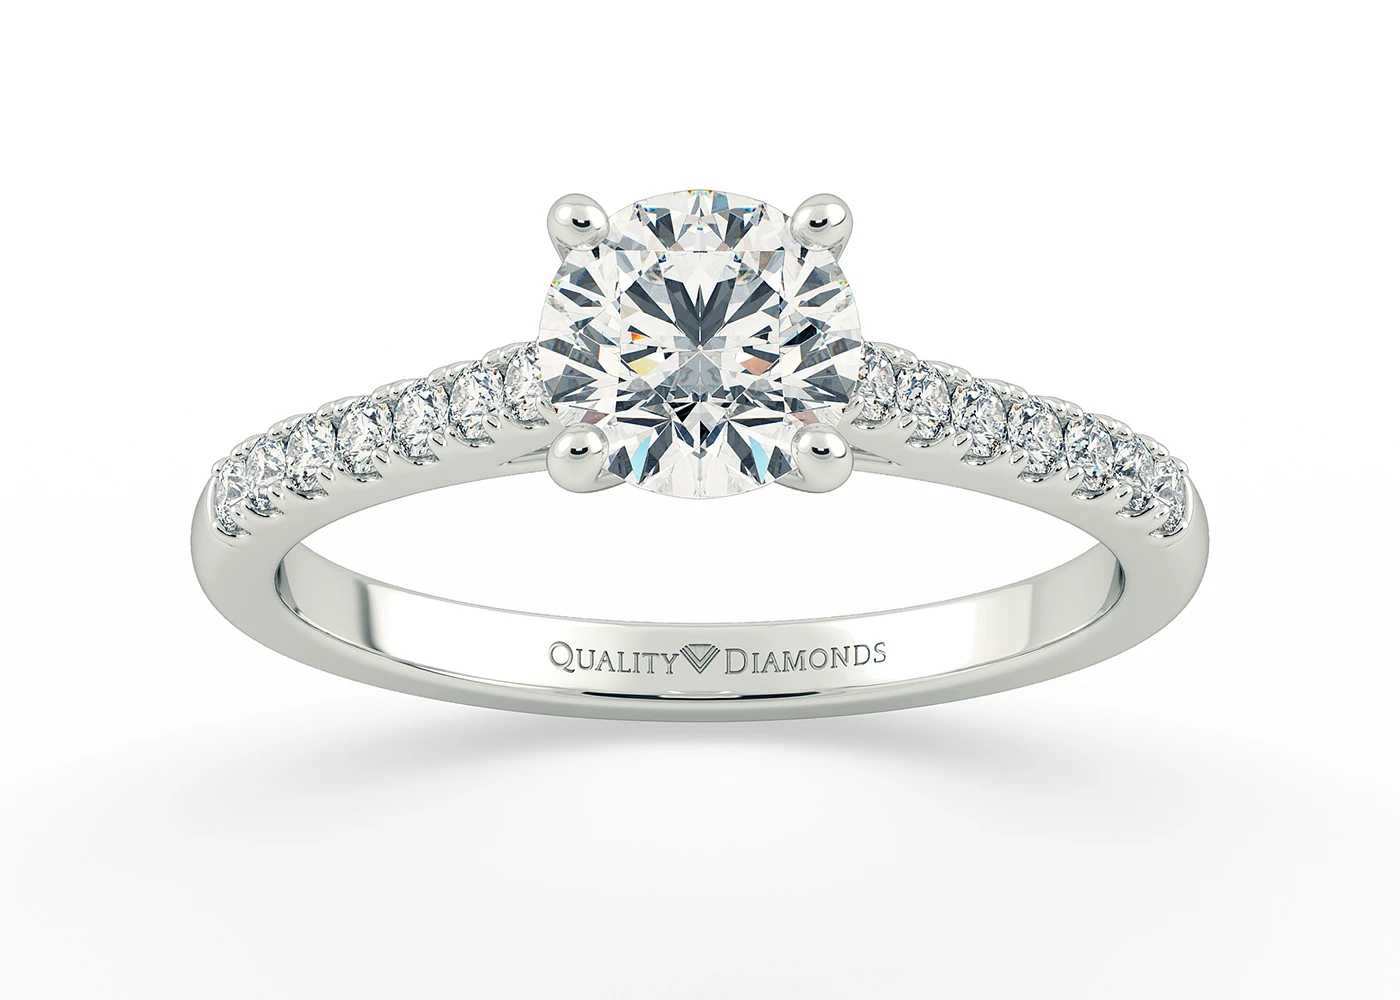 Half Carat Round Brilliant Diamond Set Diamond Engagement Ring in Platinum 950